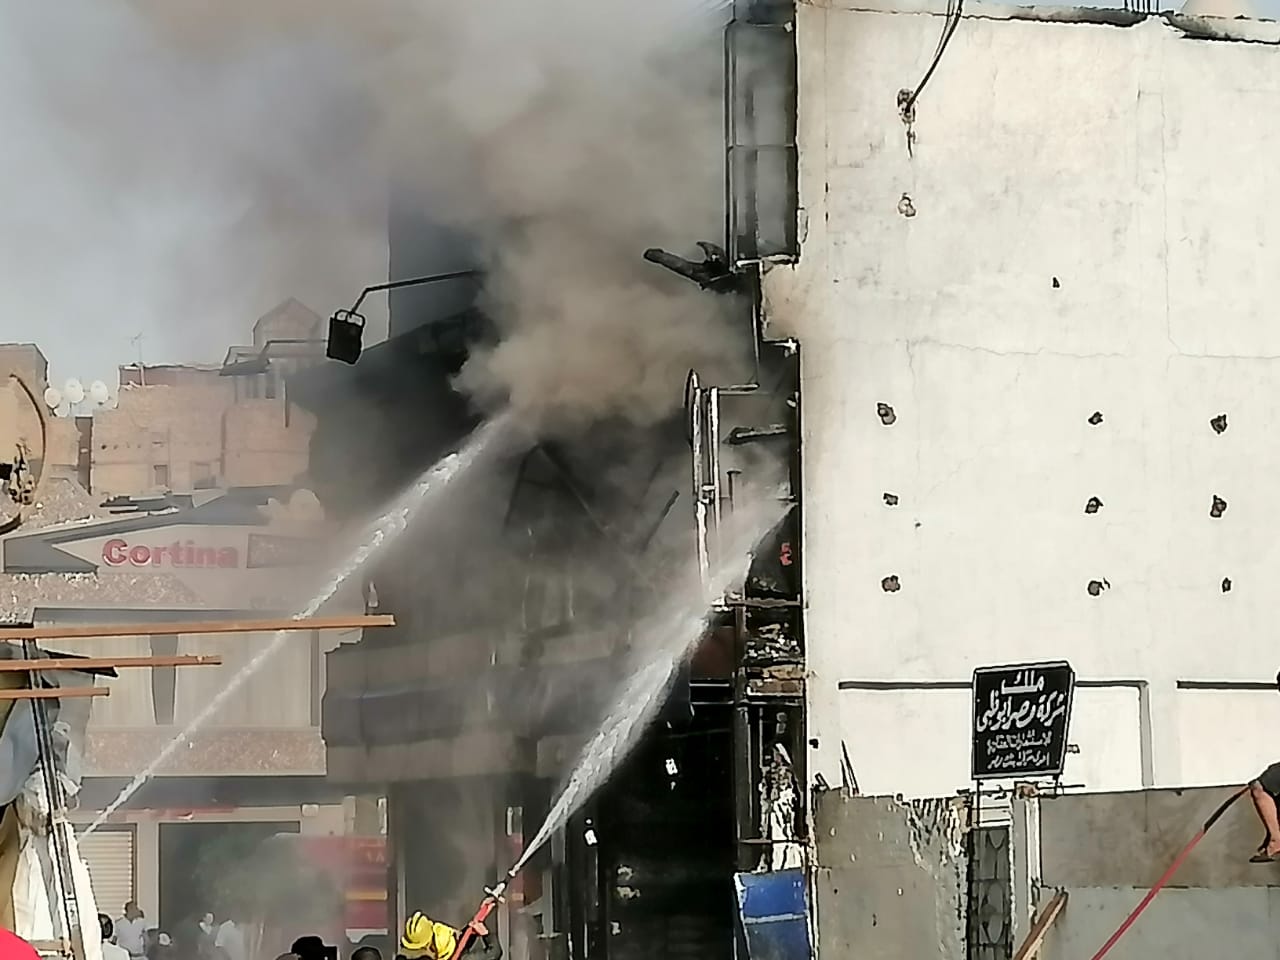   عاجل| حريق هائل يلتهم محلات الأقمشة فى منطقة بولاق أبو العلا (صور )